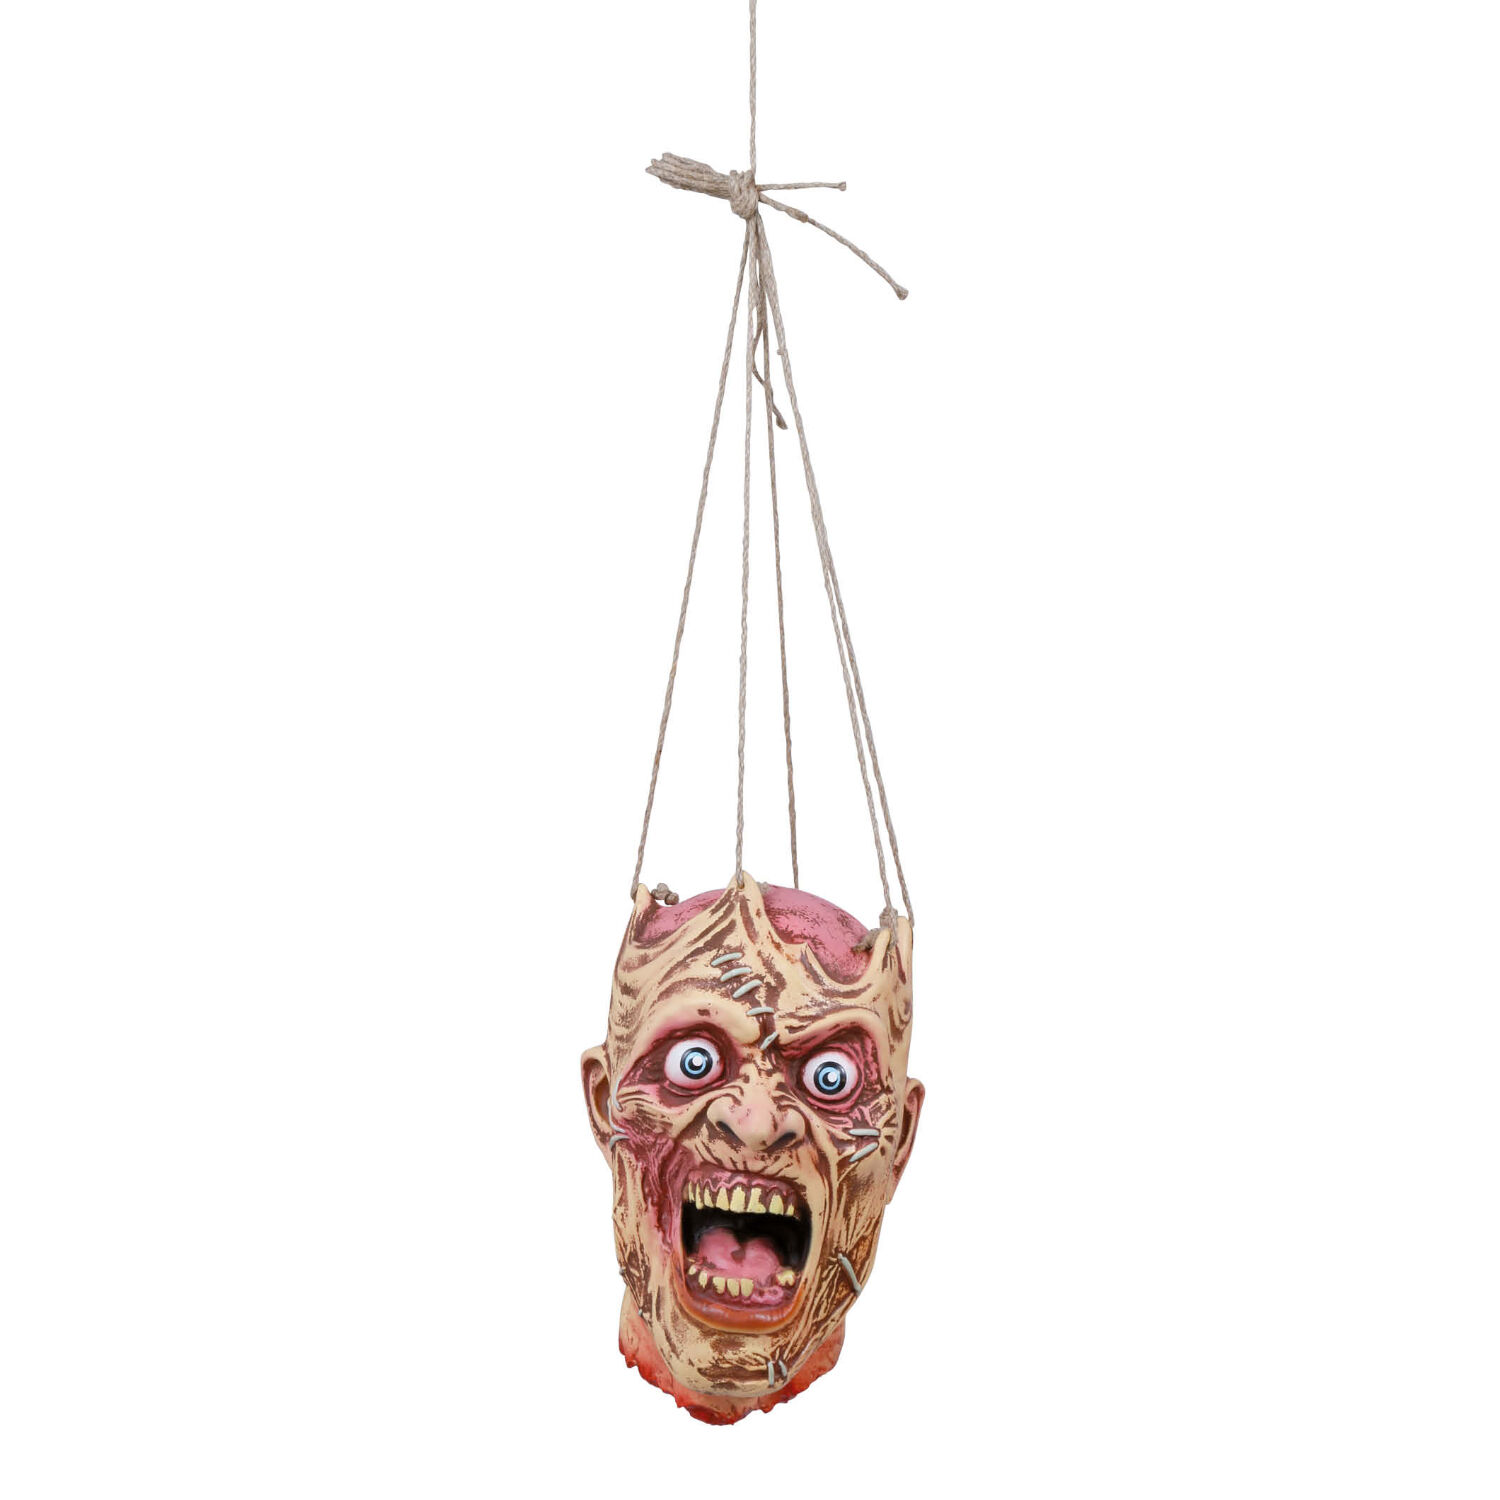 NEU Hnge-Dekoration Zombie-Kopf aus Latex mit offener Schdeldecke, ca. 28cm